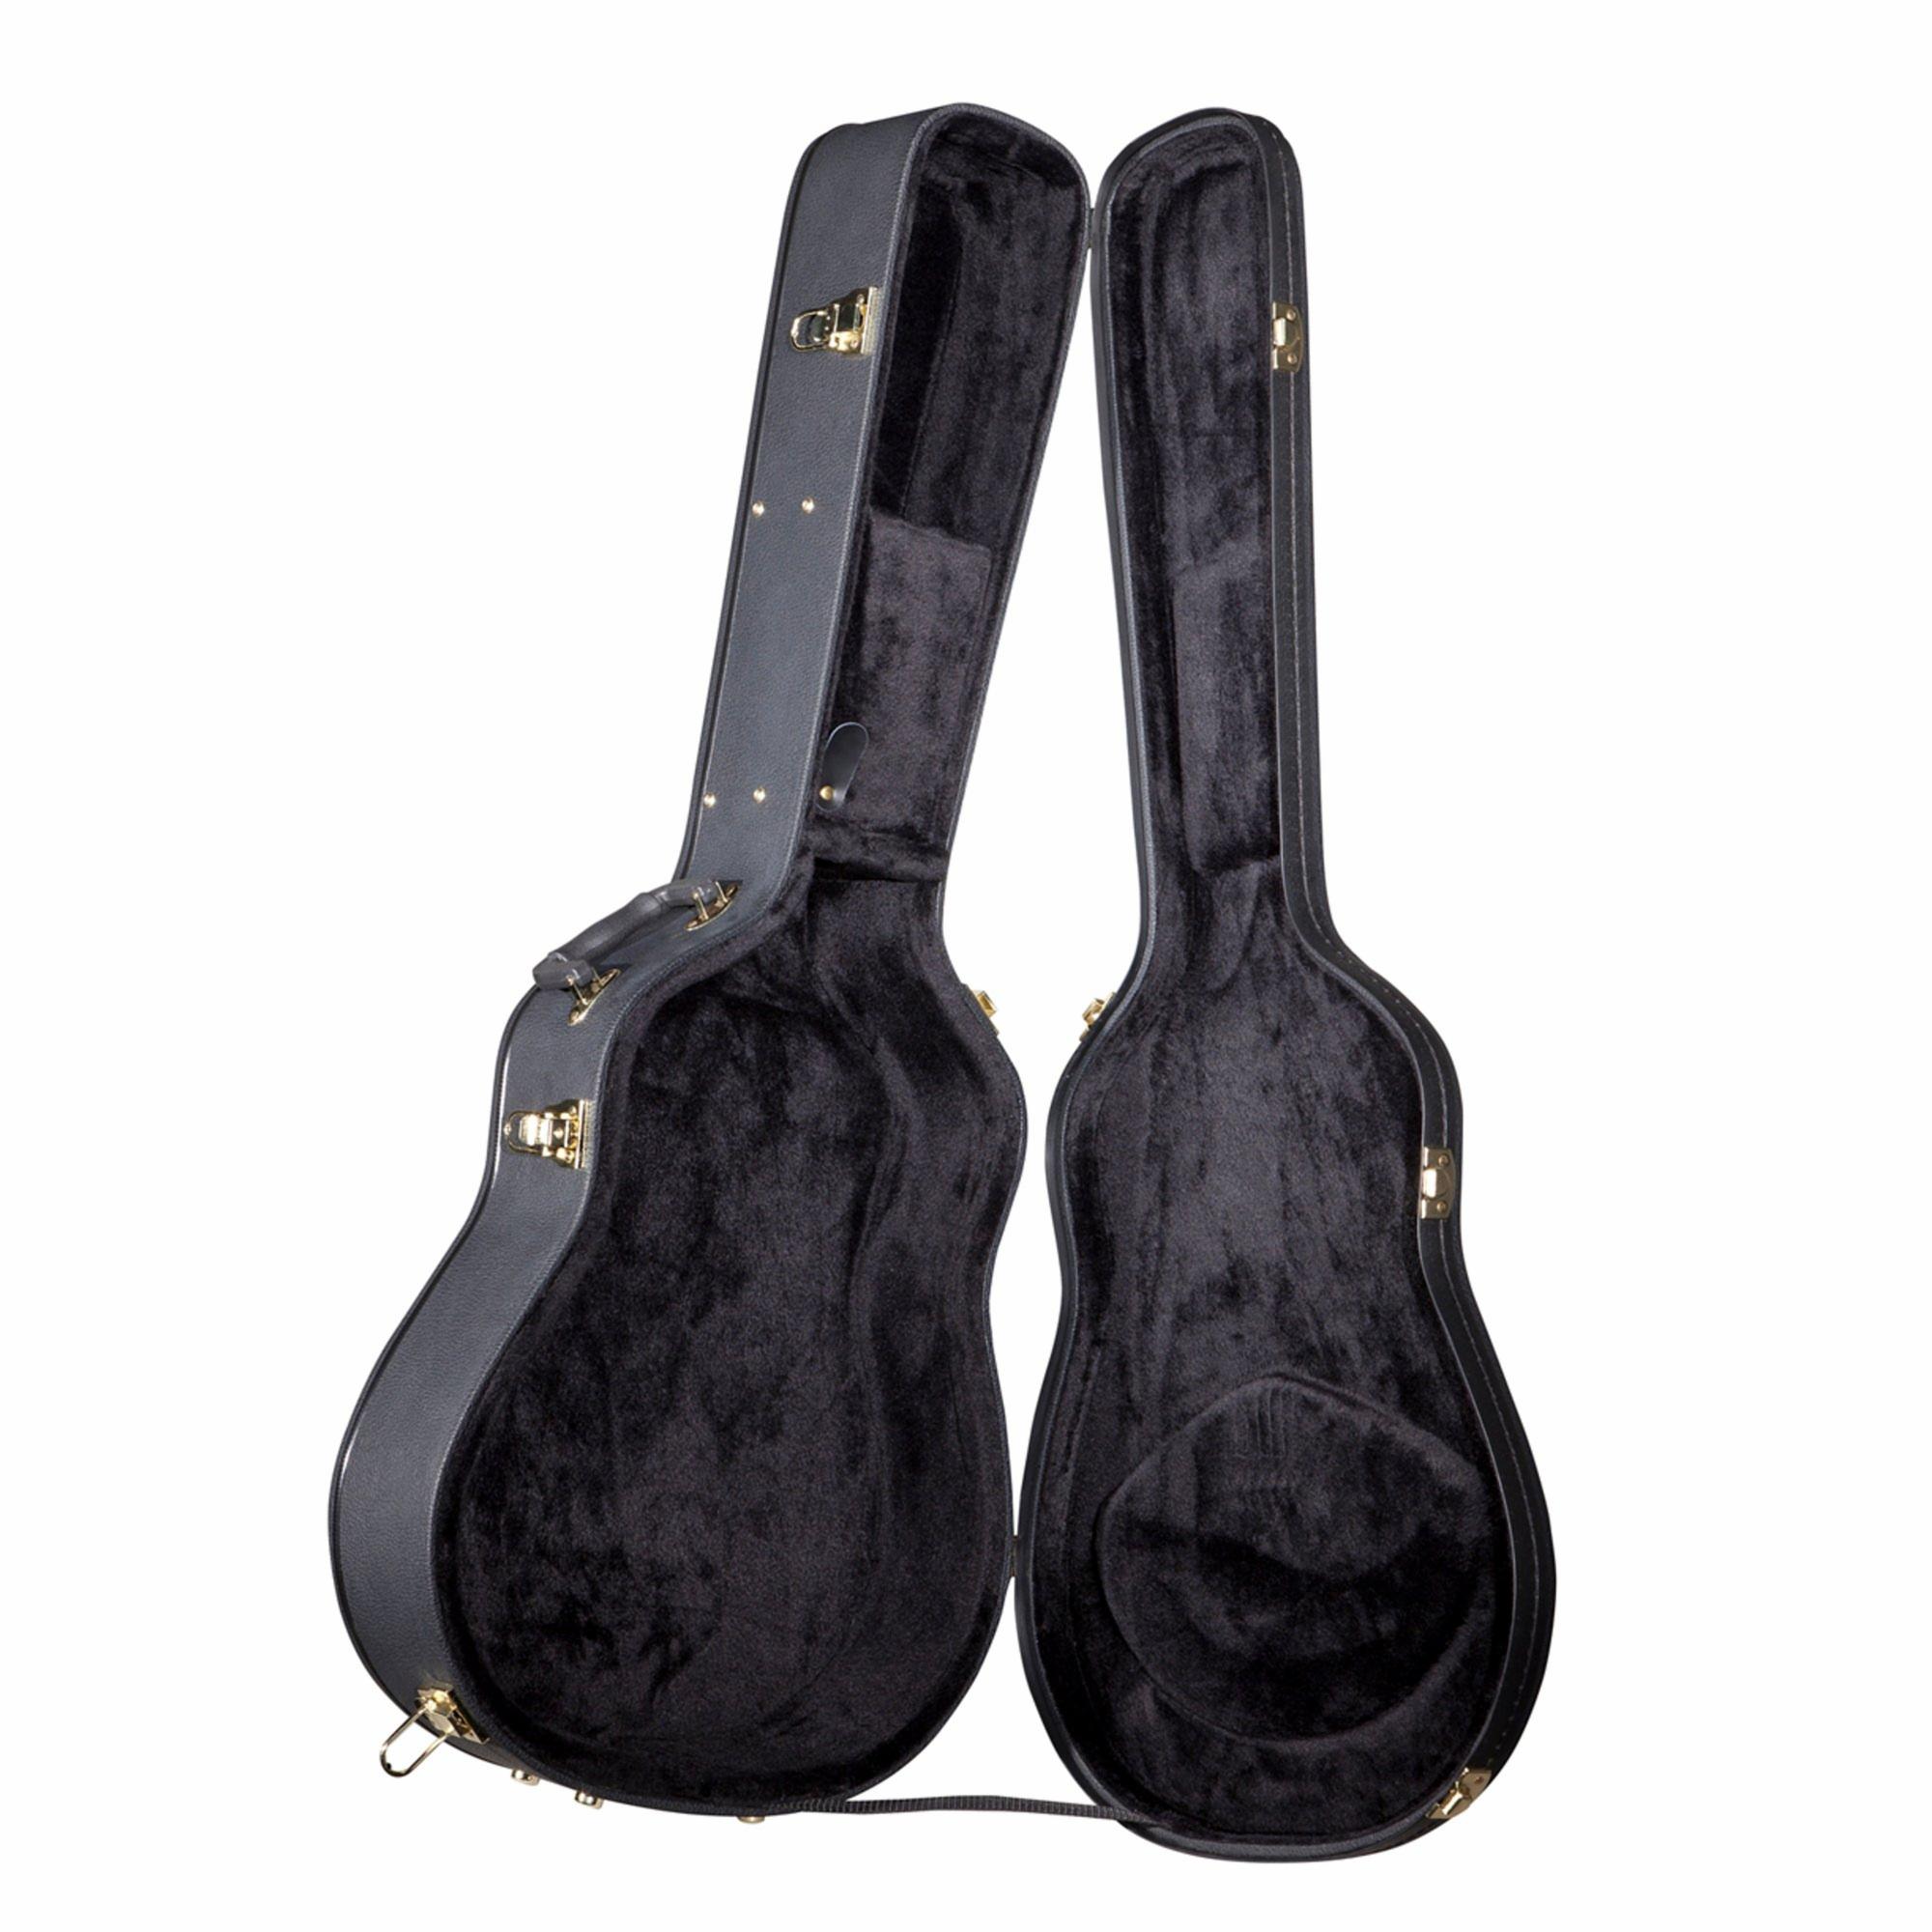 Yamaha AG1 Hardshell Guitar Case